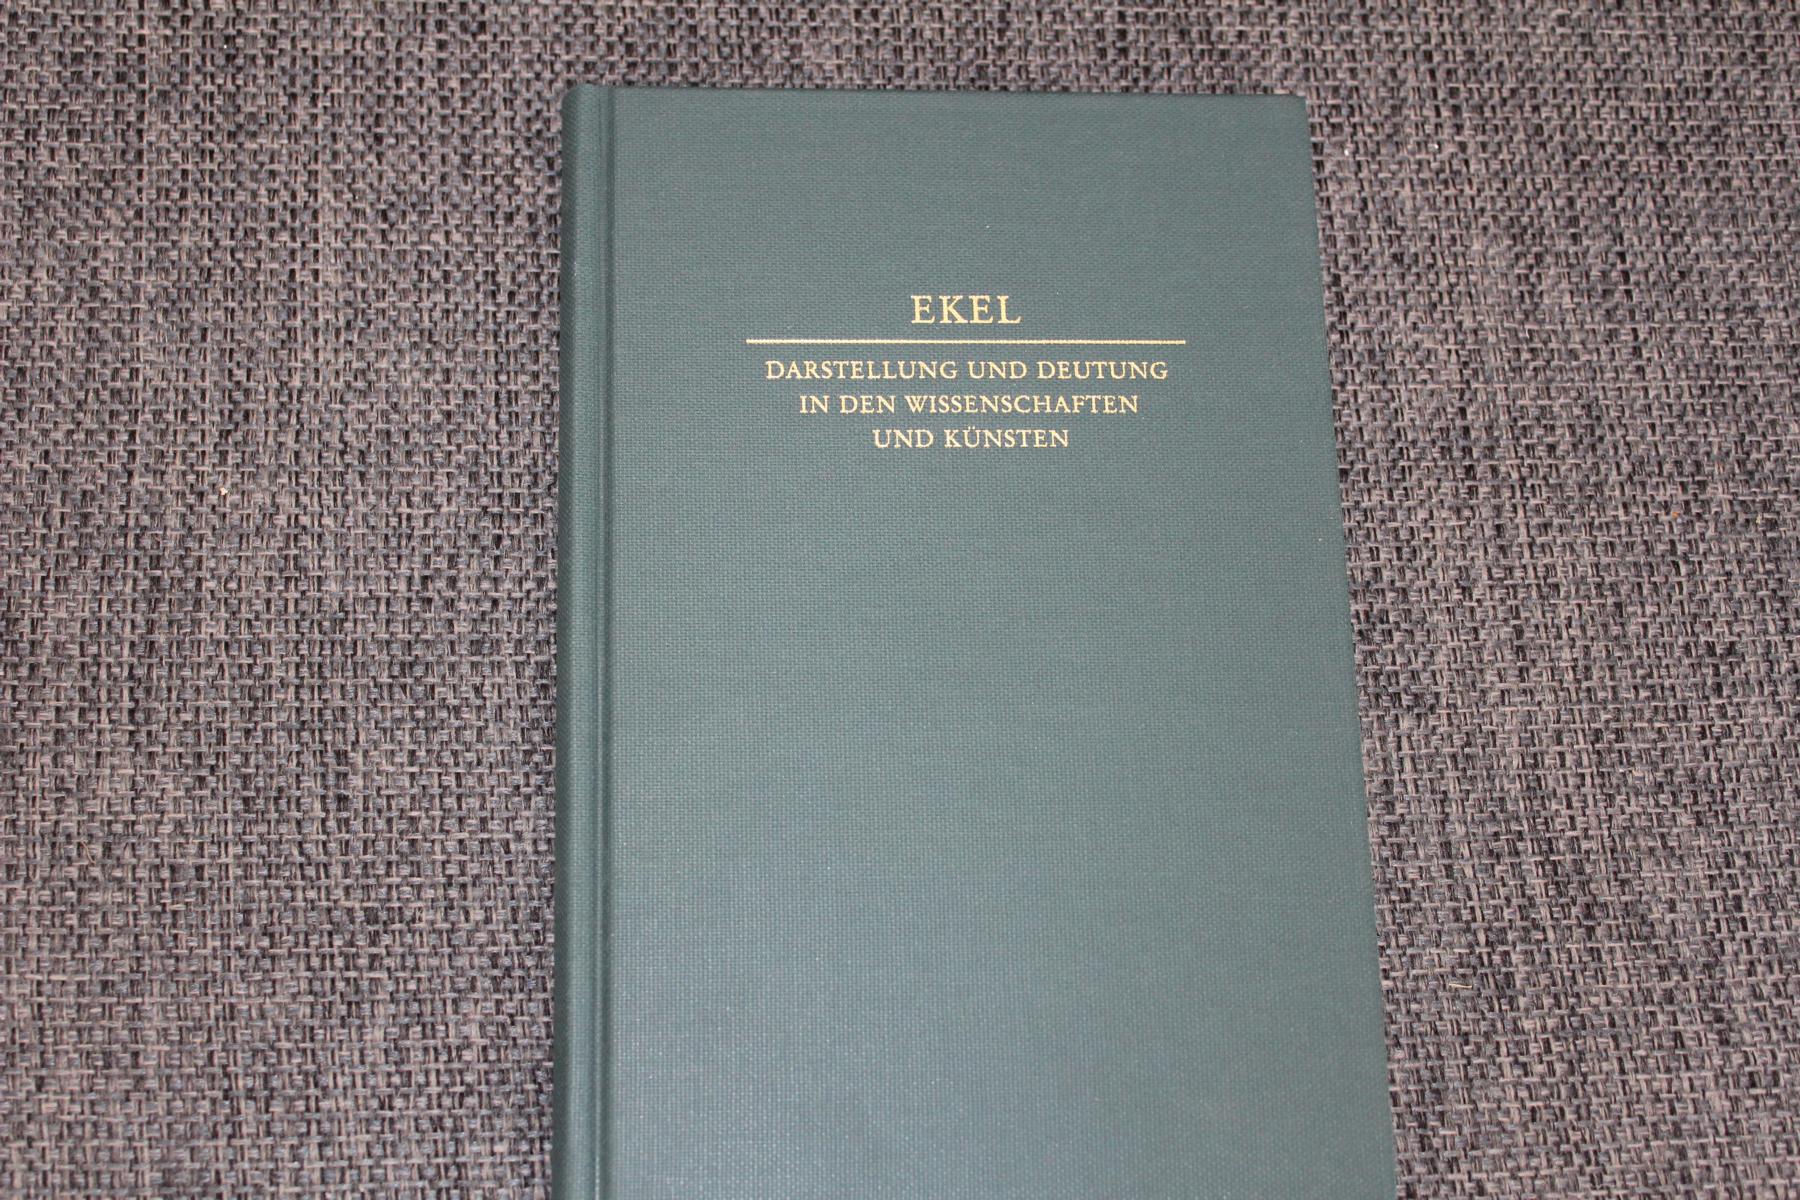 Ekel - Darstellung und Deutung in den Wissenschaften und Künsten. Beiträge von Werner Kübler u.a. - Kick, Hermes A. (Hrsg.)